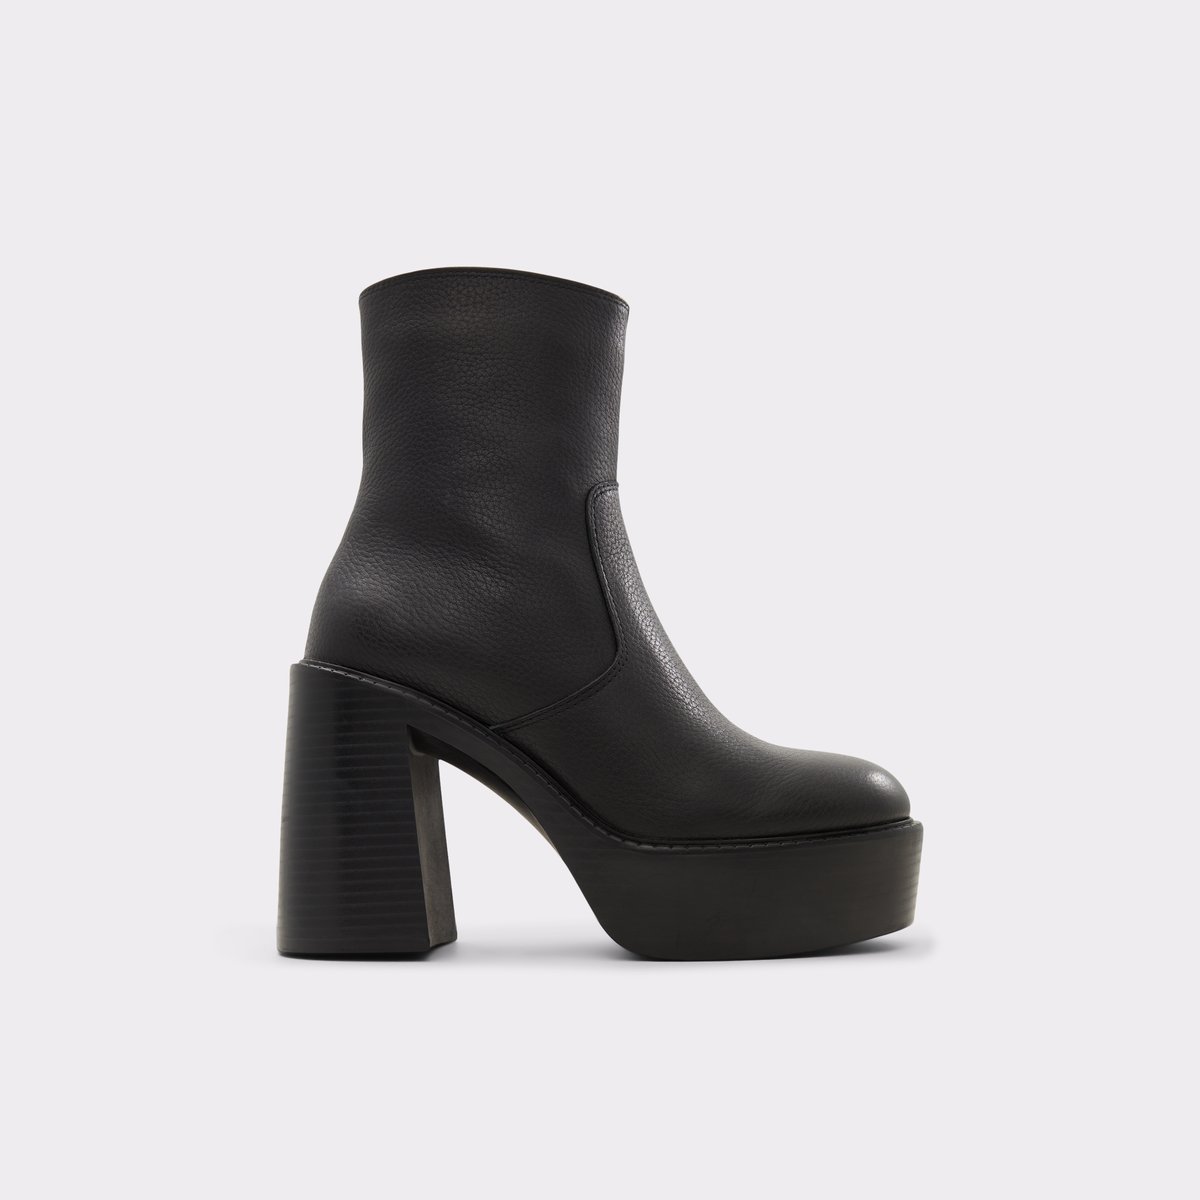 Myrelle Black Women's Ankle Boots | ALDO US